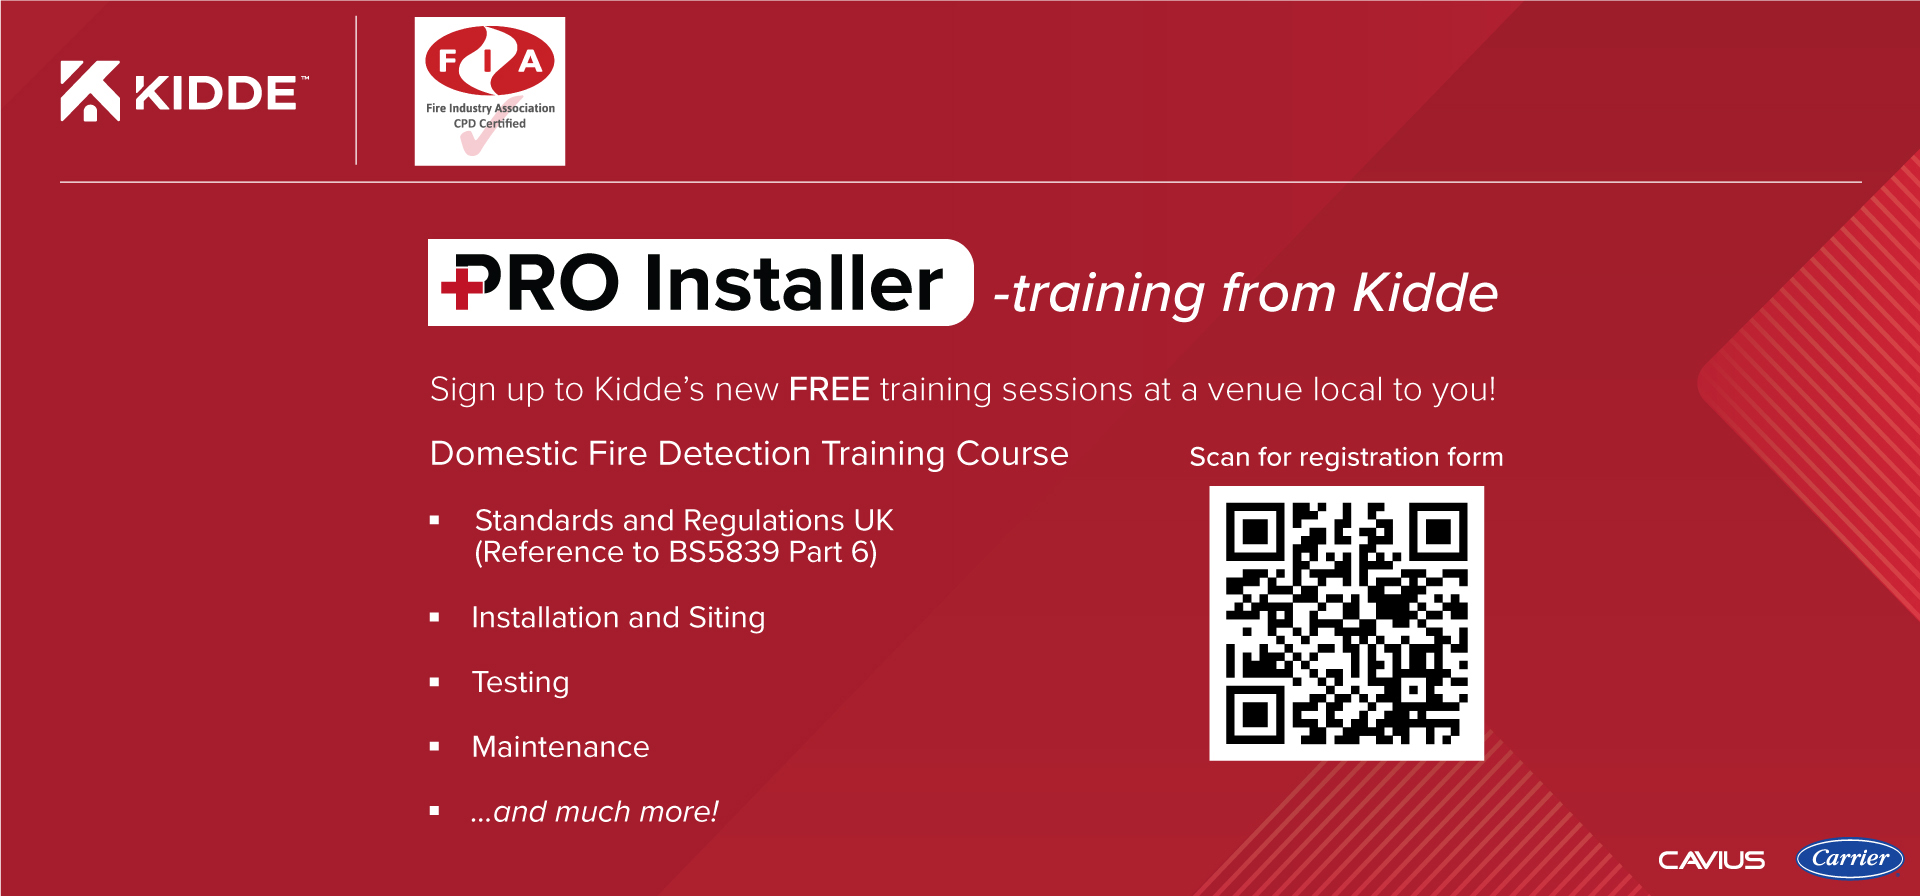 Kidde-Pro-Installer-Training-Flyer-new-logo_1920x896